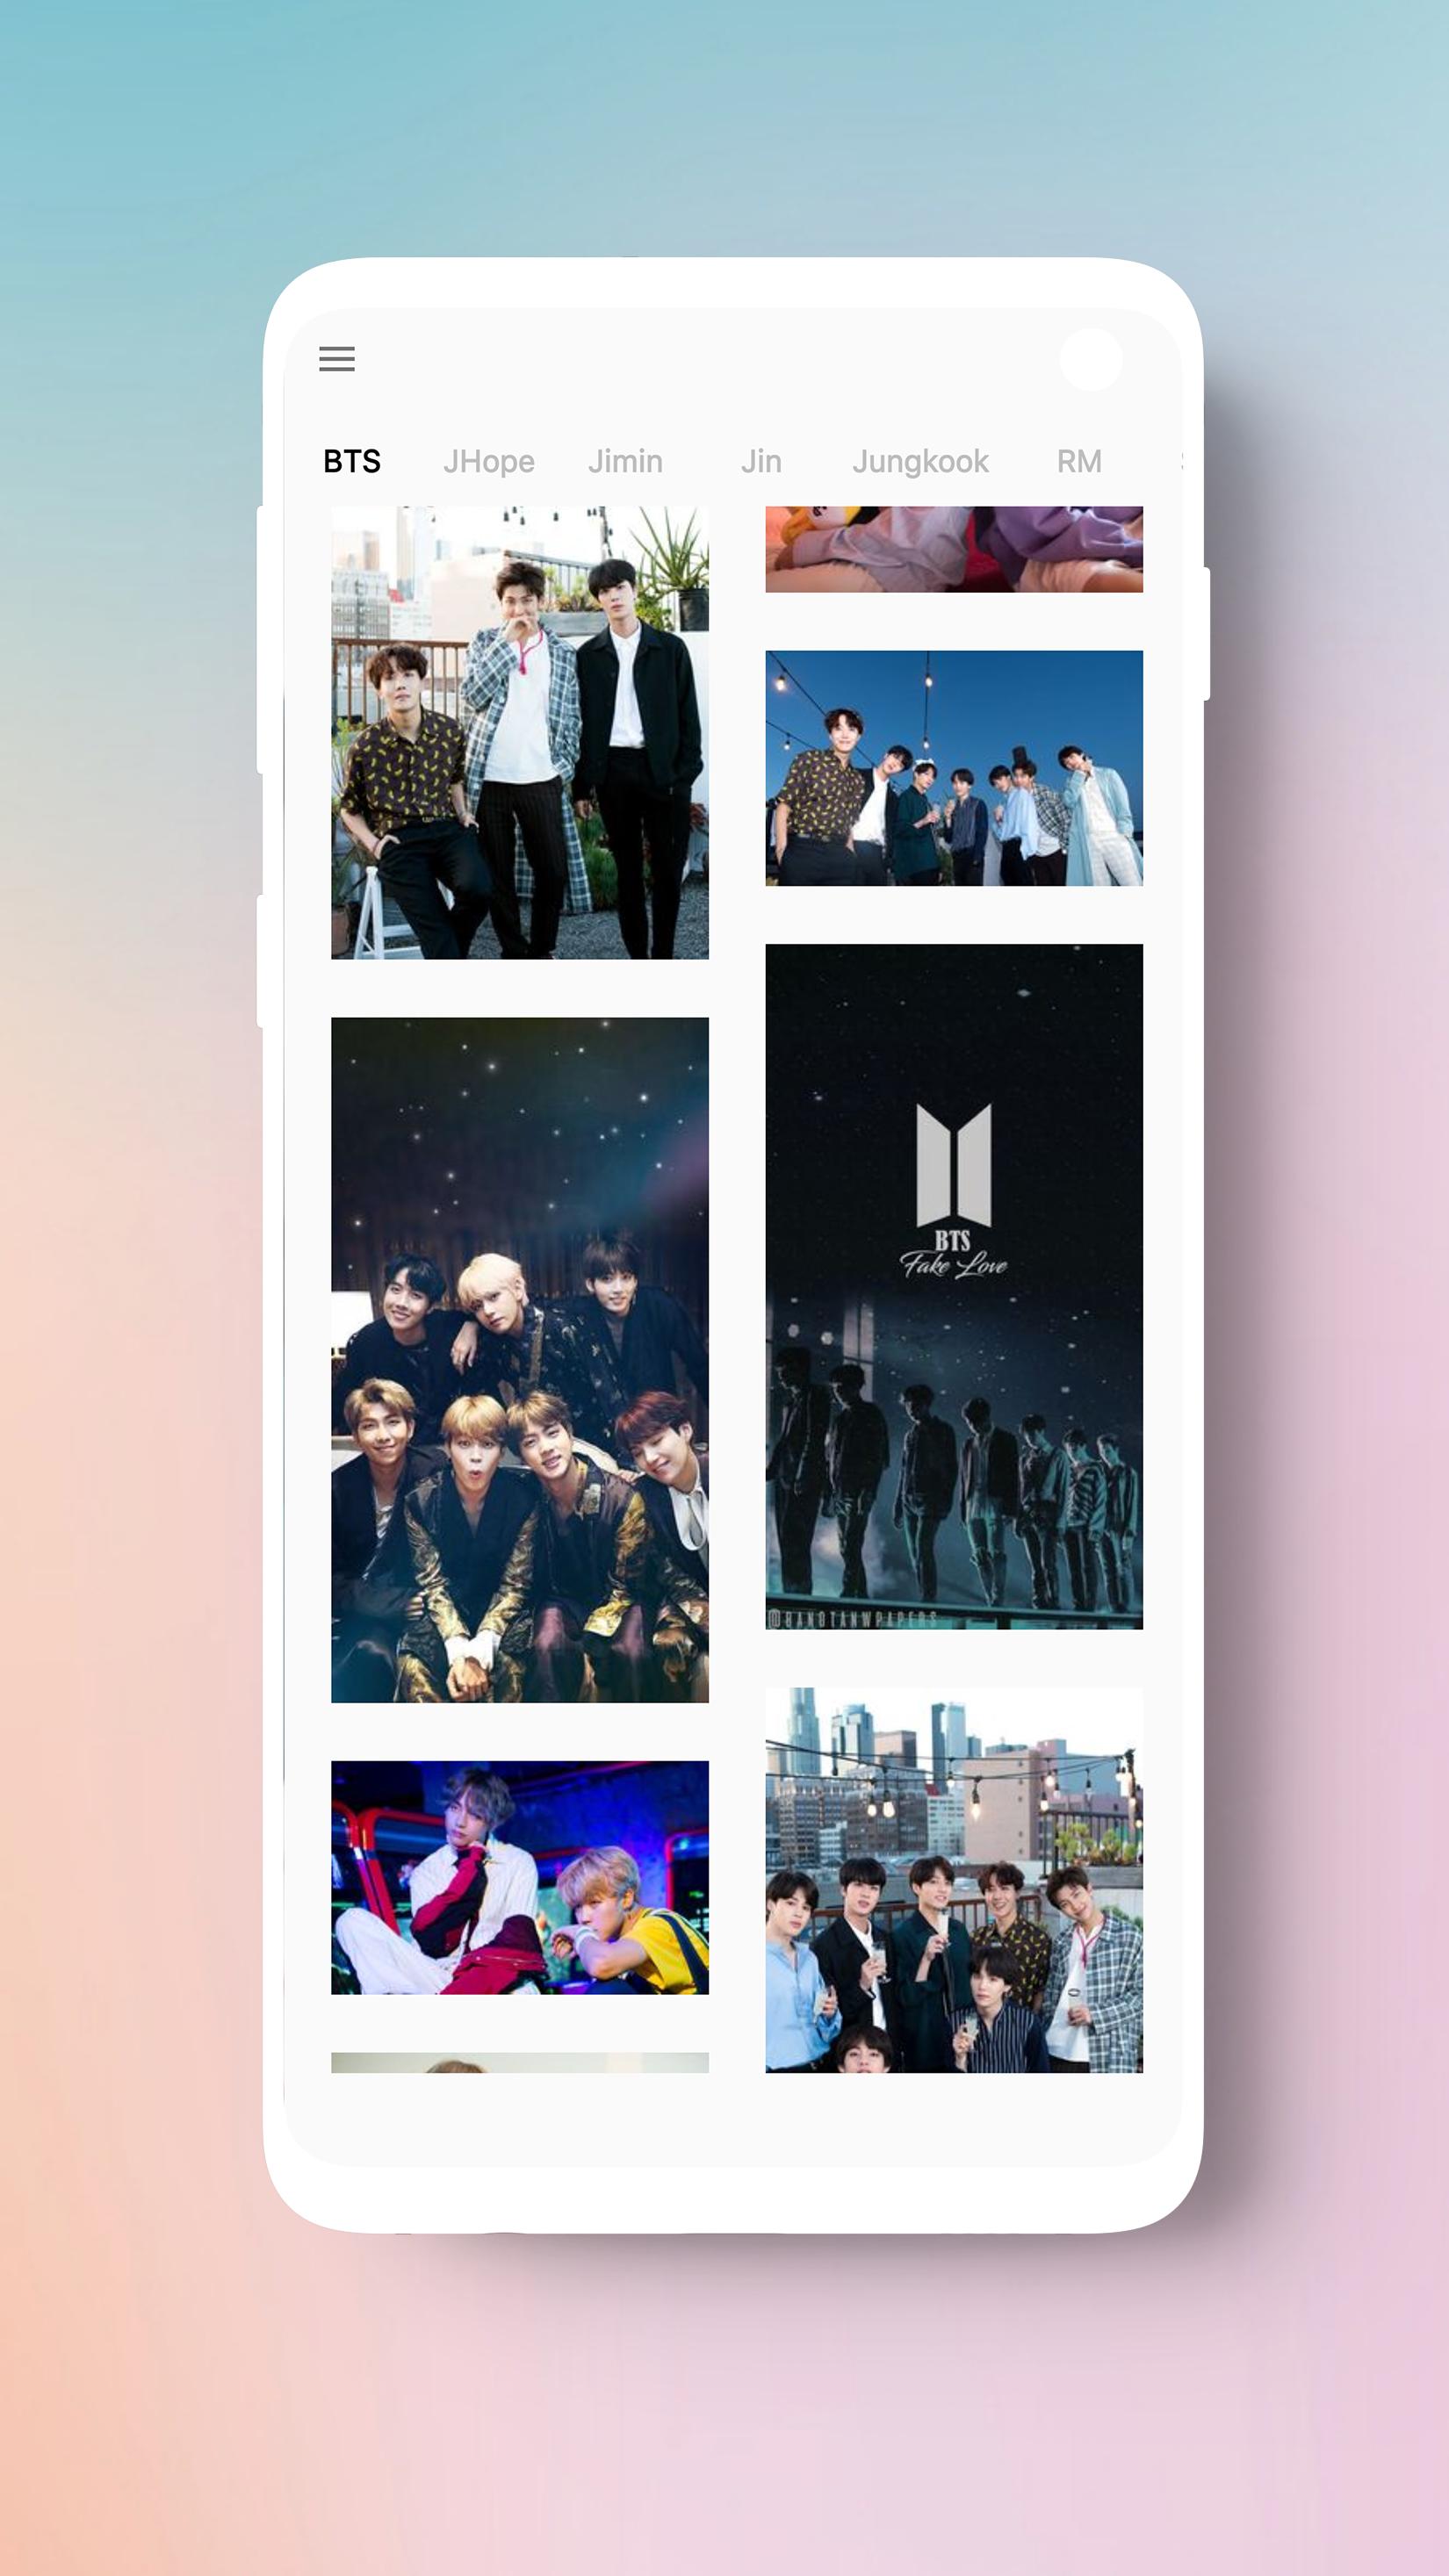 ⭐ BTS Wallpaper HD Photos 2020 1.7 Screenshot 6